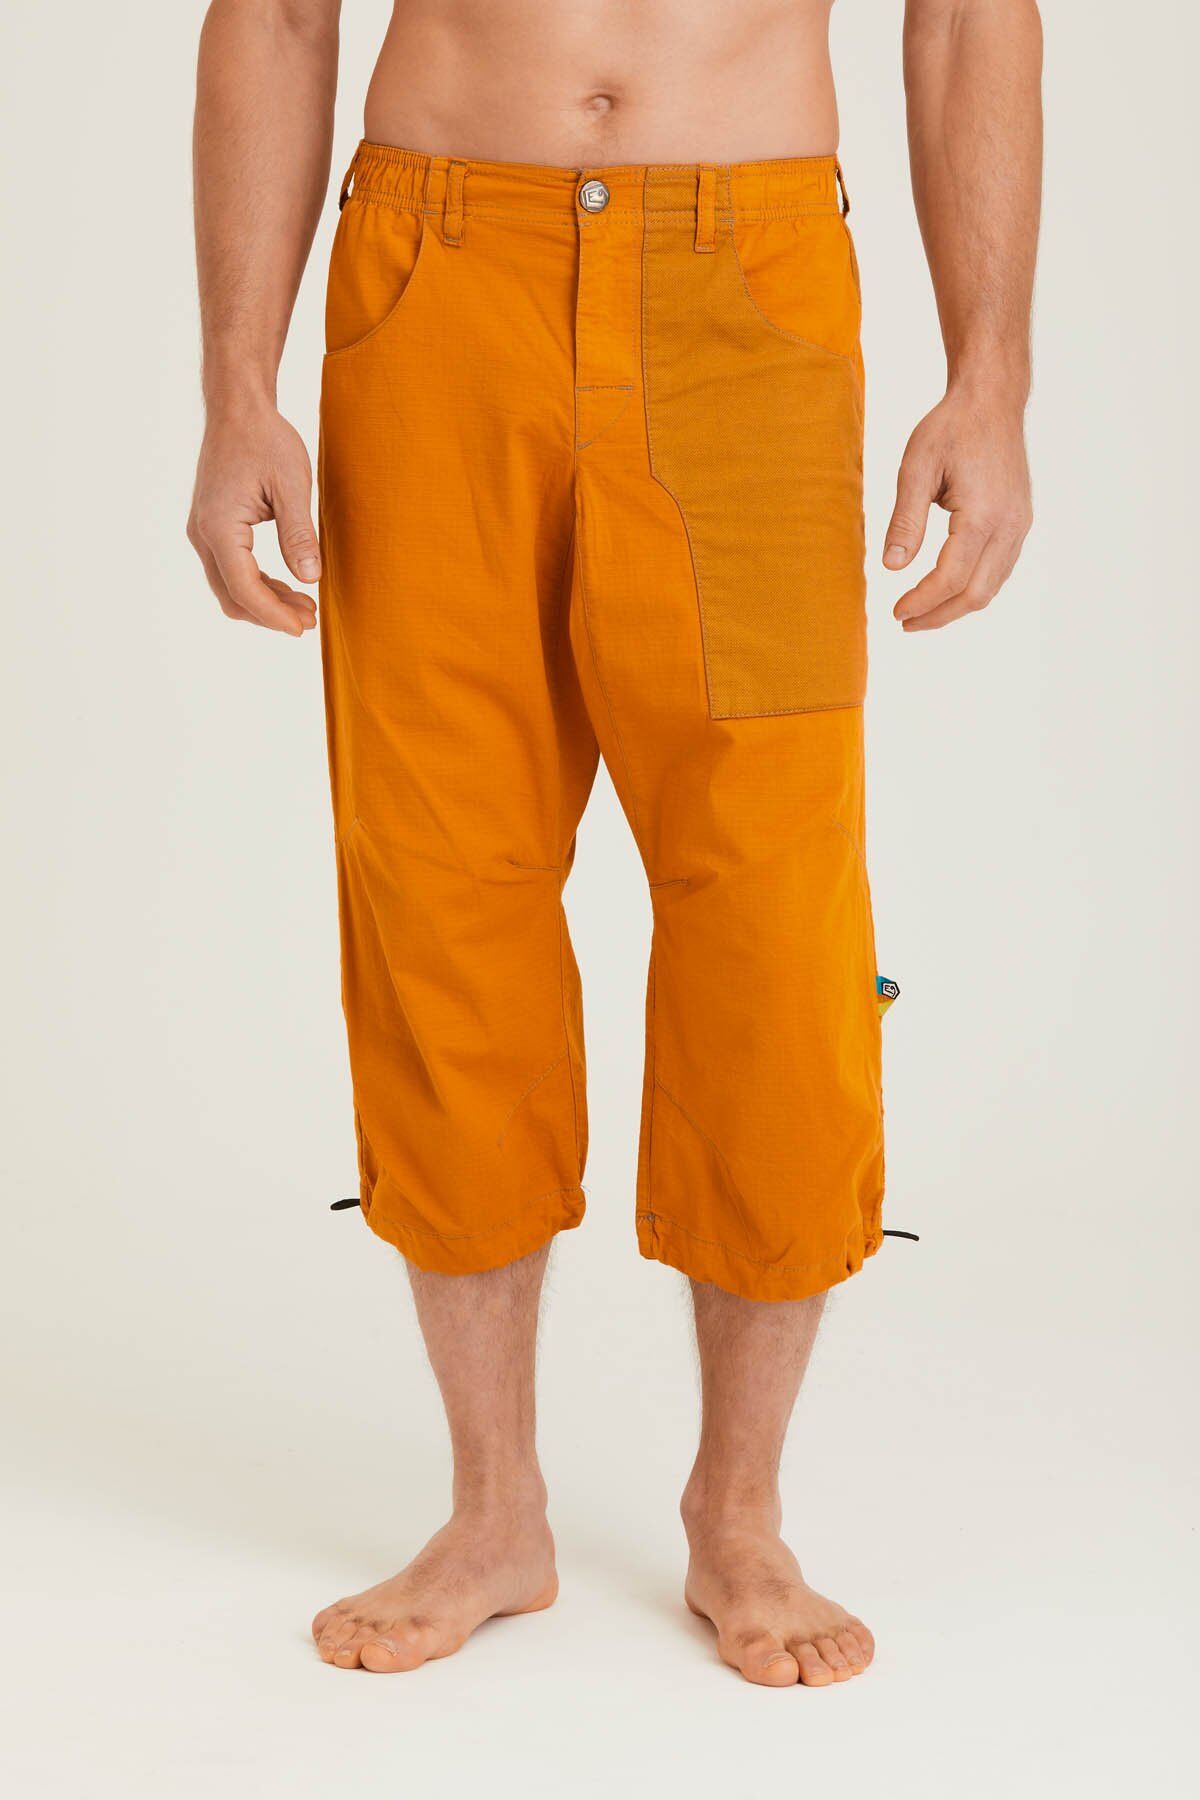 E9 N Fuoco - Pantalones cortos - Hombre